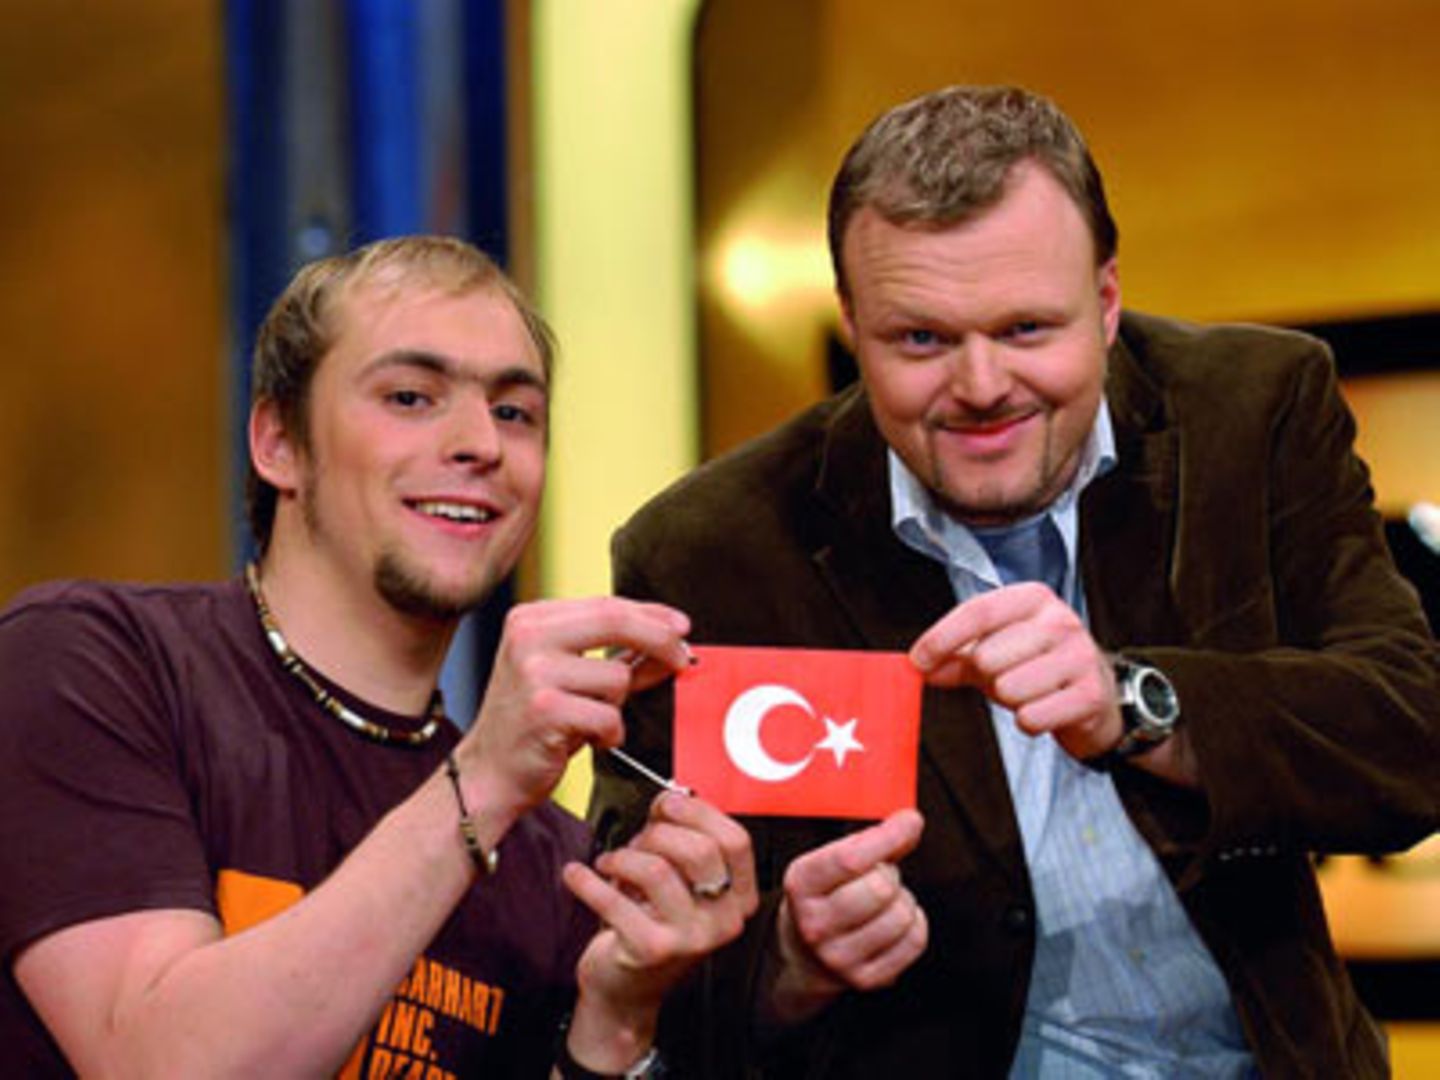 Highlights aus zehn Jahren "TV Total": Stefan Raab und Max Mutzke